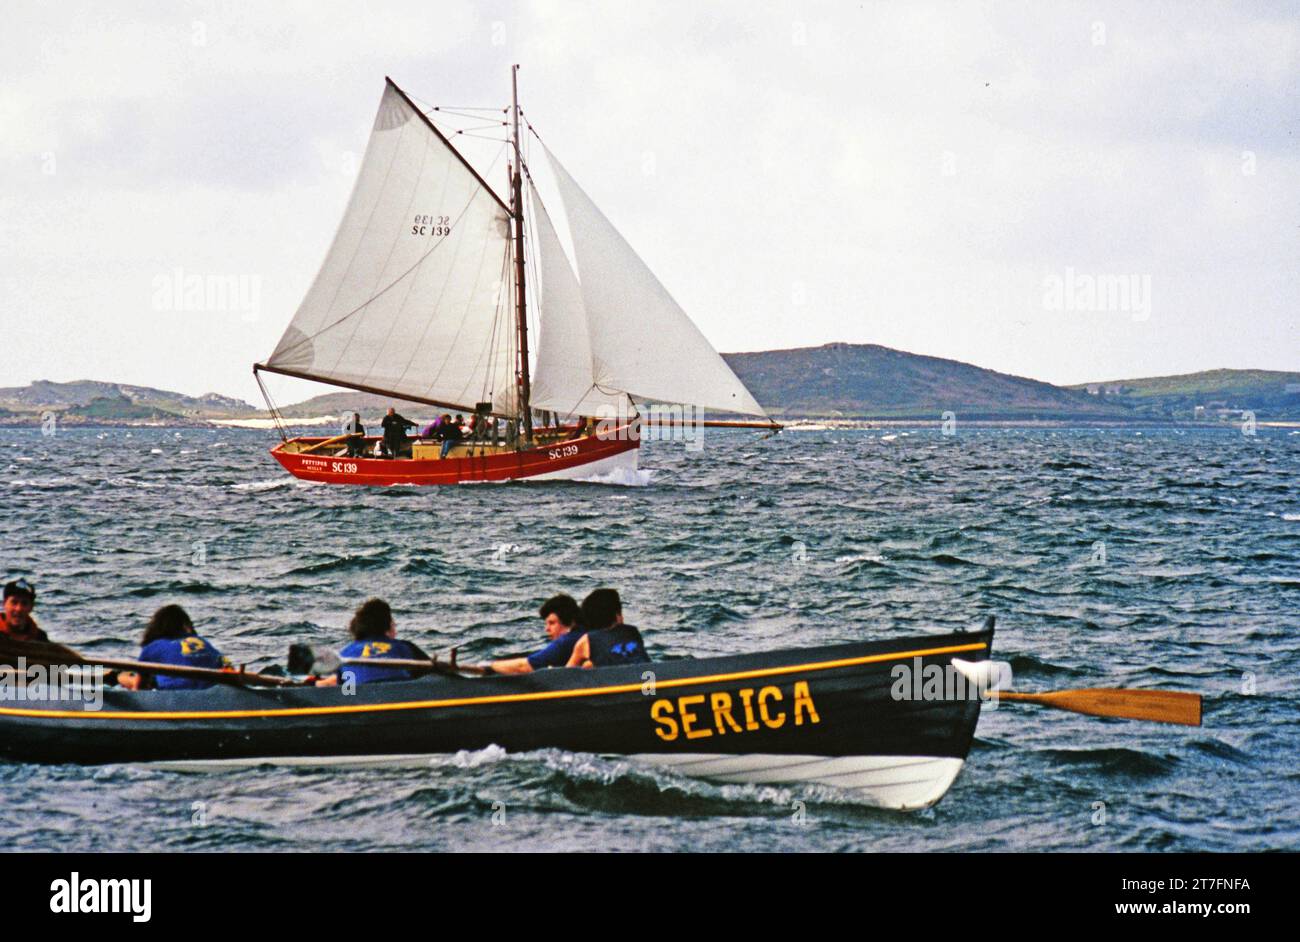 Pettifox, una replica di granchi francesi, l'ultima barca a vela in legno costruita sulle isole Scilly, vista qui a seguito di una delle barche in una gara femminile Foto Stock